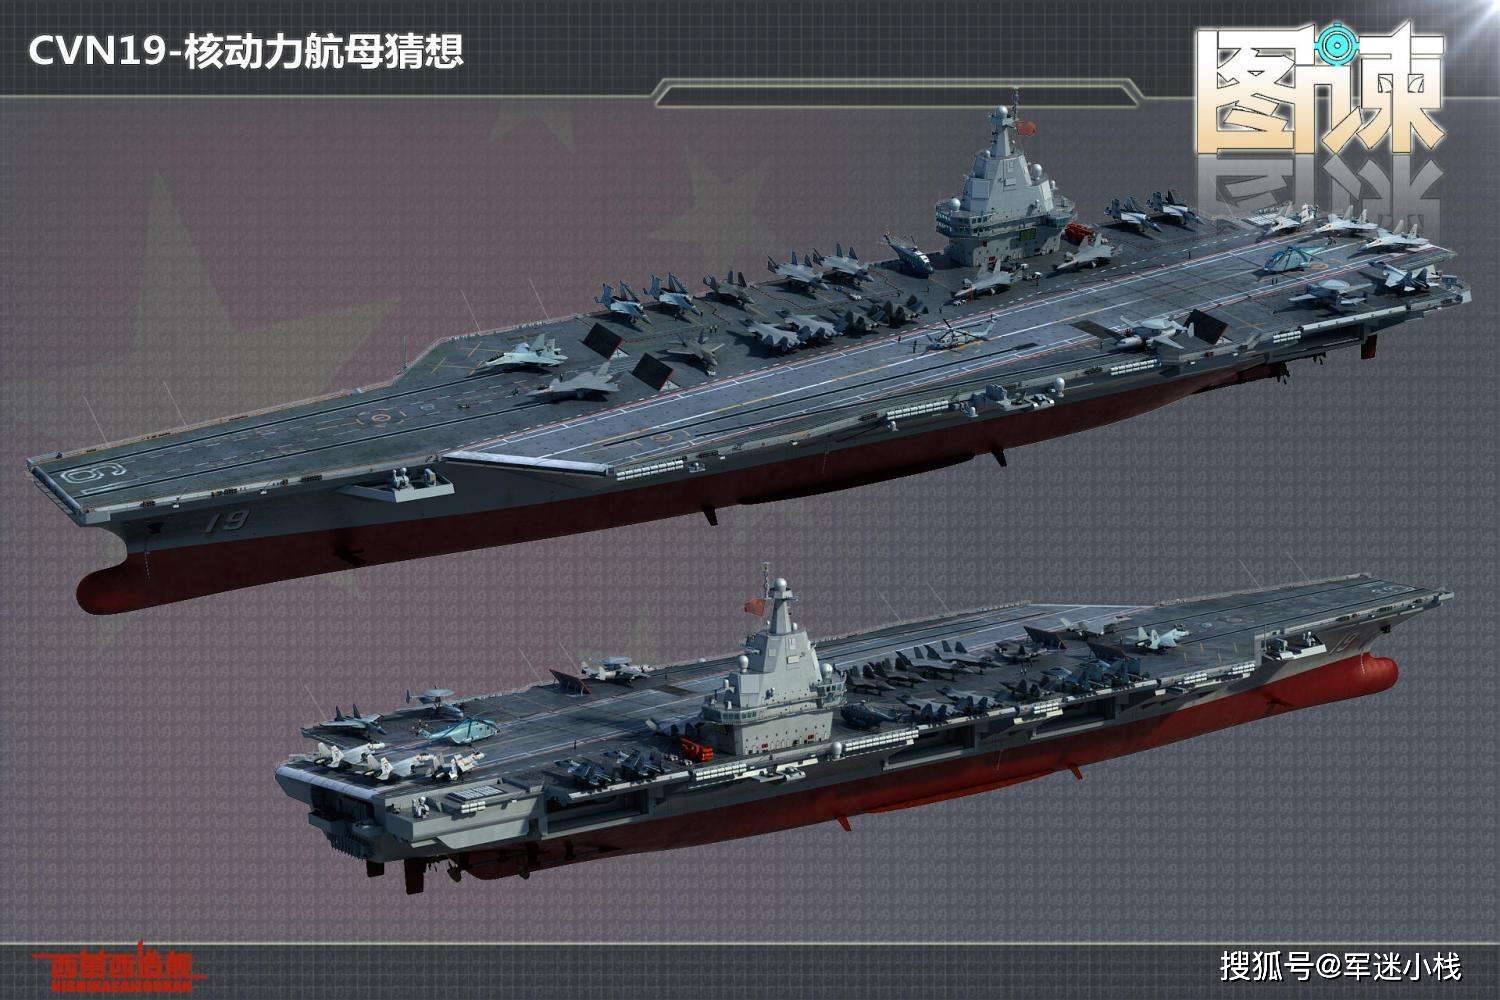 中国未来核动力航母想象图(图片来源:微博@西葛西造舰军事cg) 返回搜